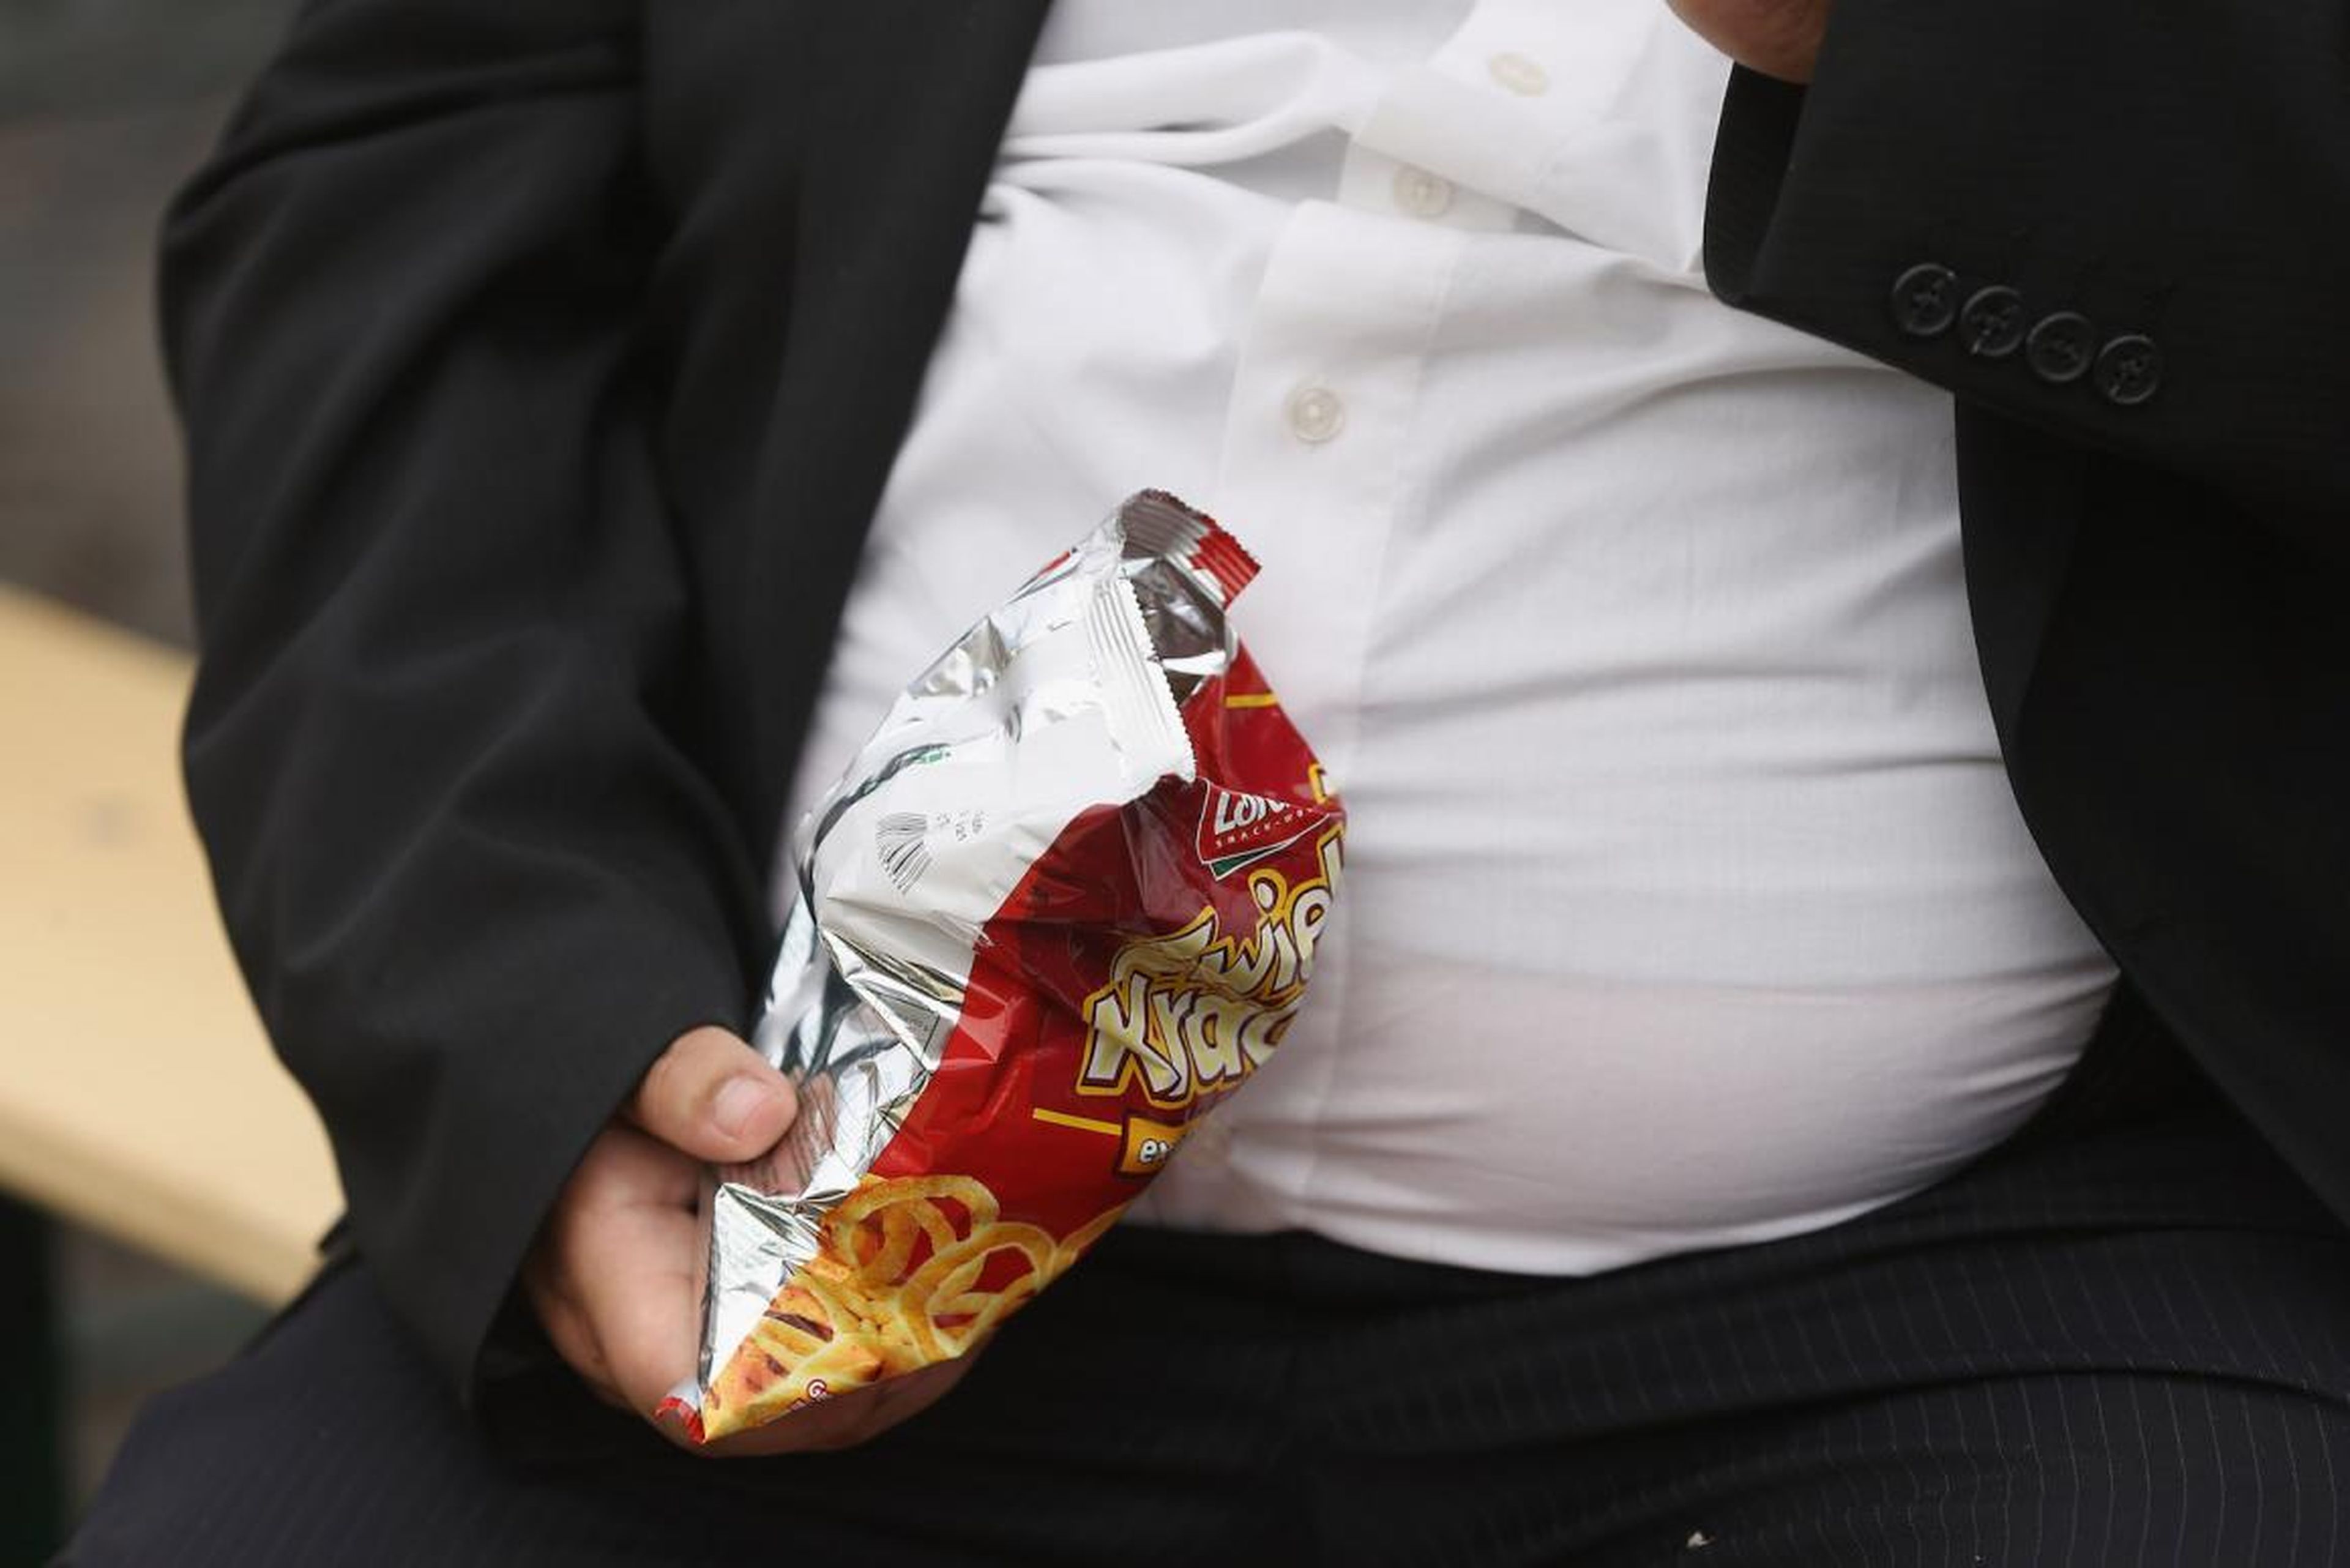 Sobrepeso y mala alimentación, otro riesgo